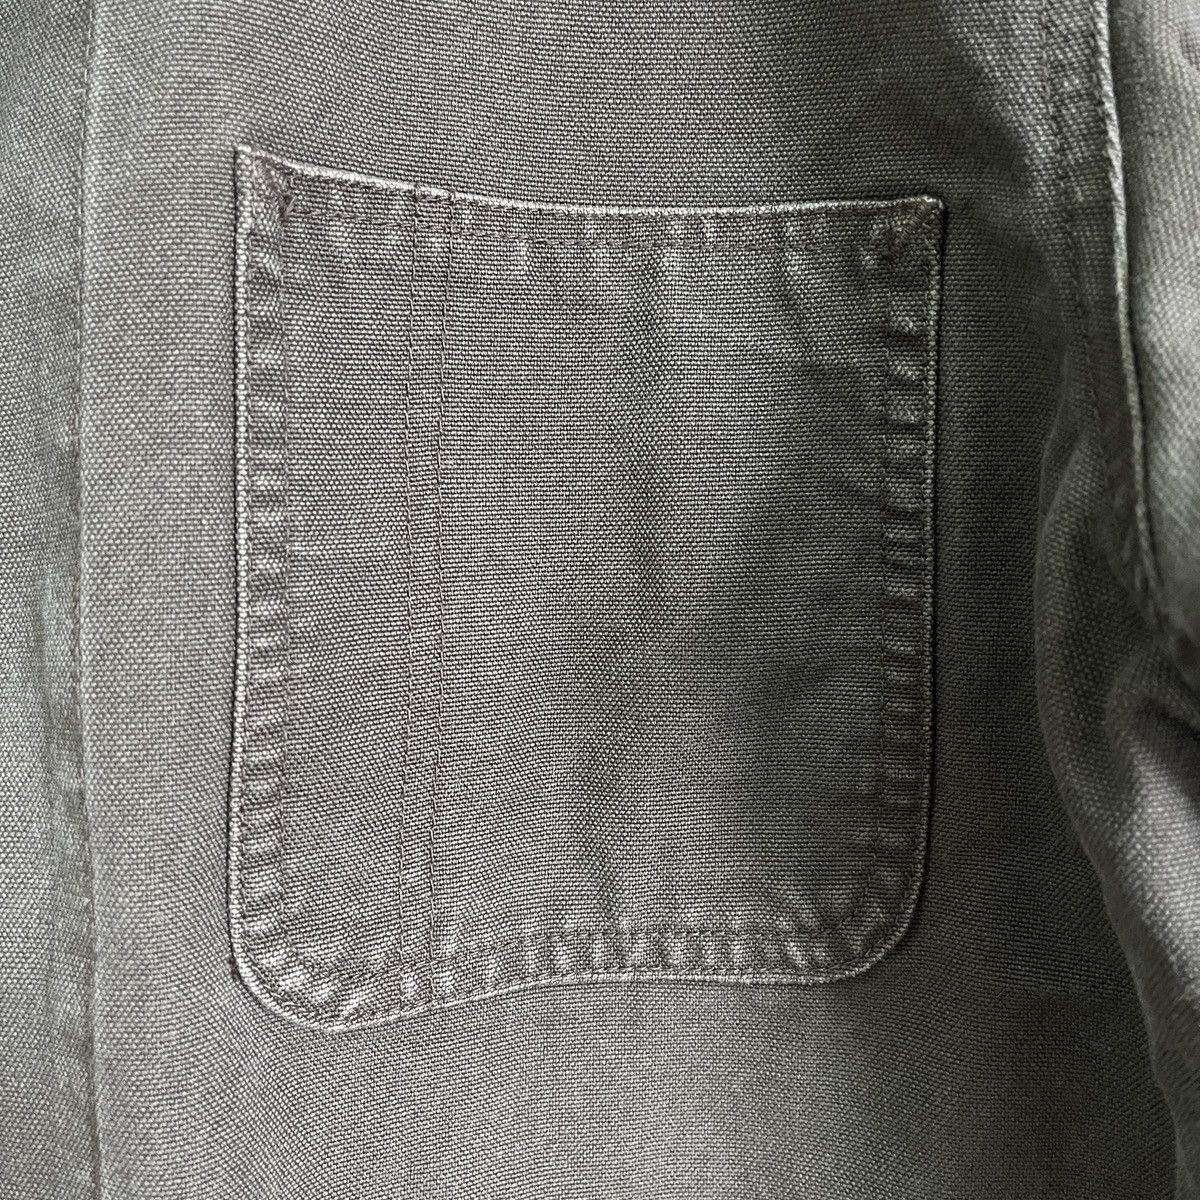 Uniqlo Chore Jacket Japan Size XL - 11